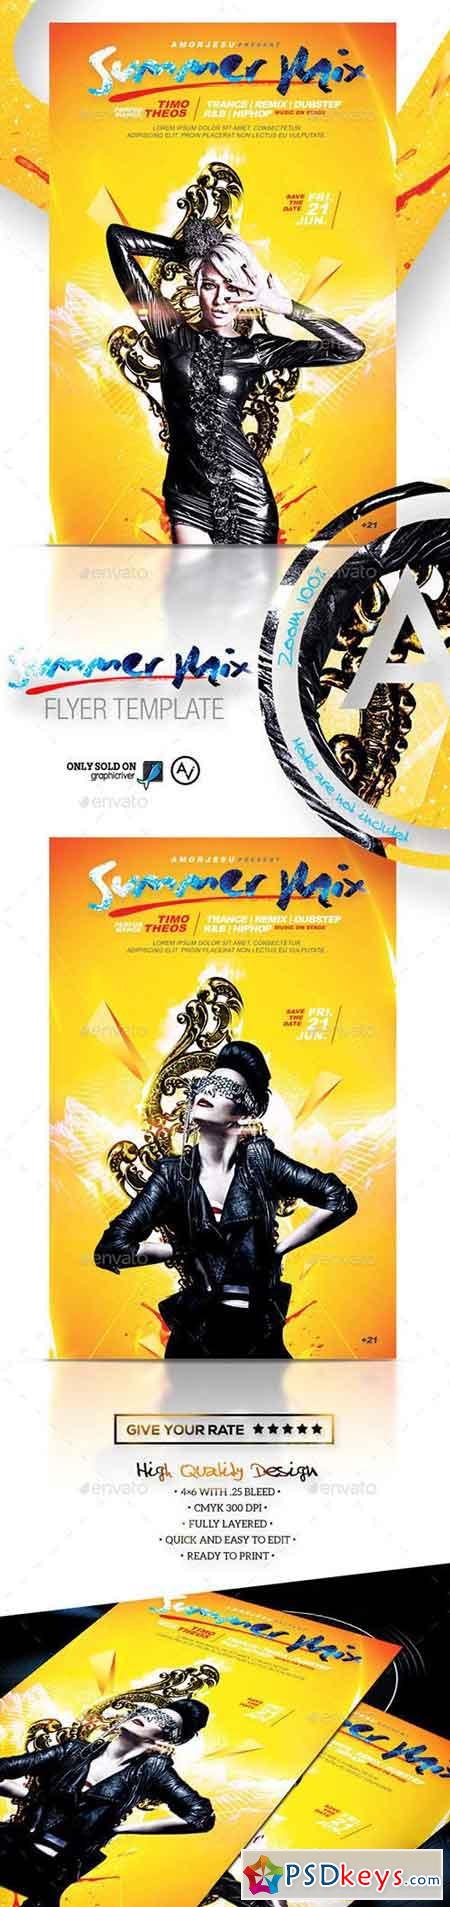 Summer Mix Flyer Template 11683089